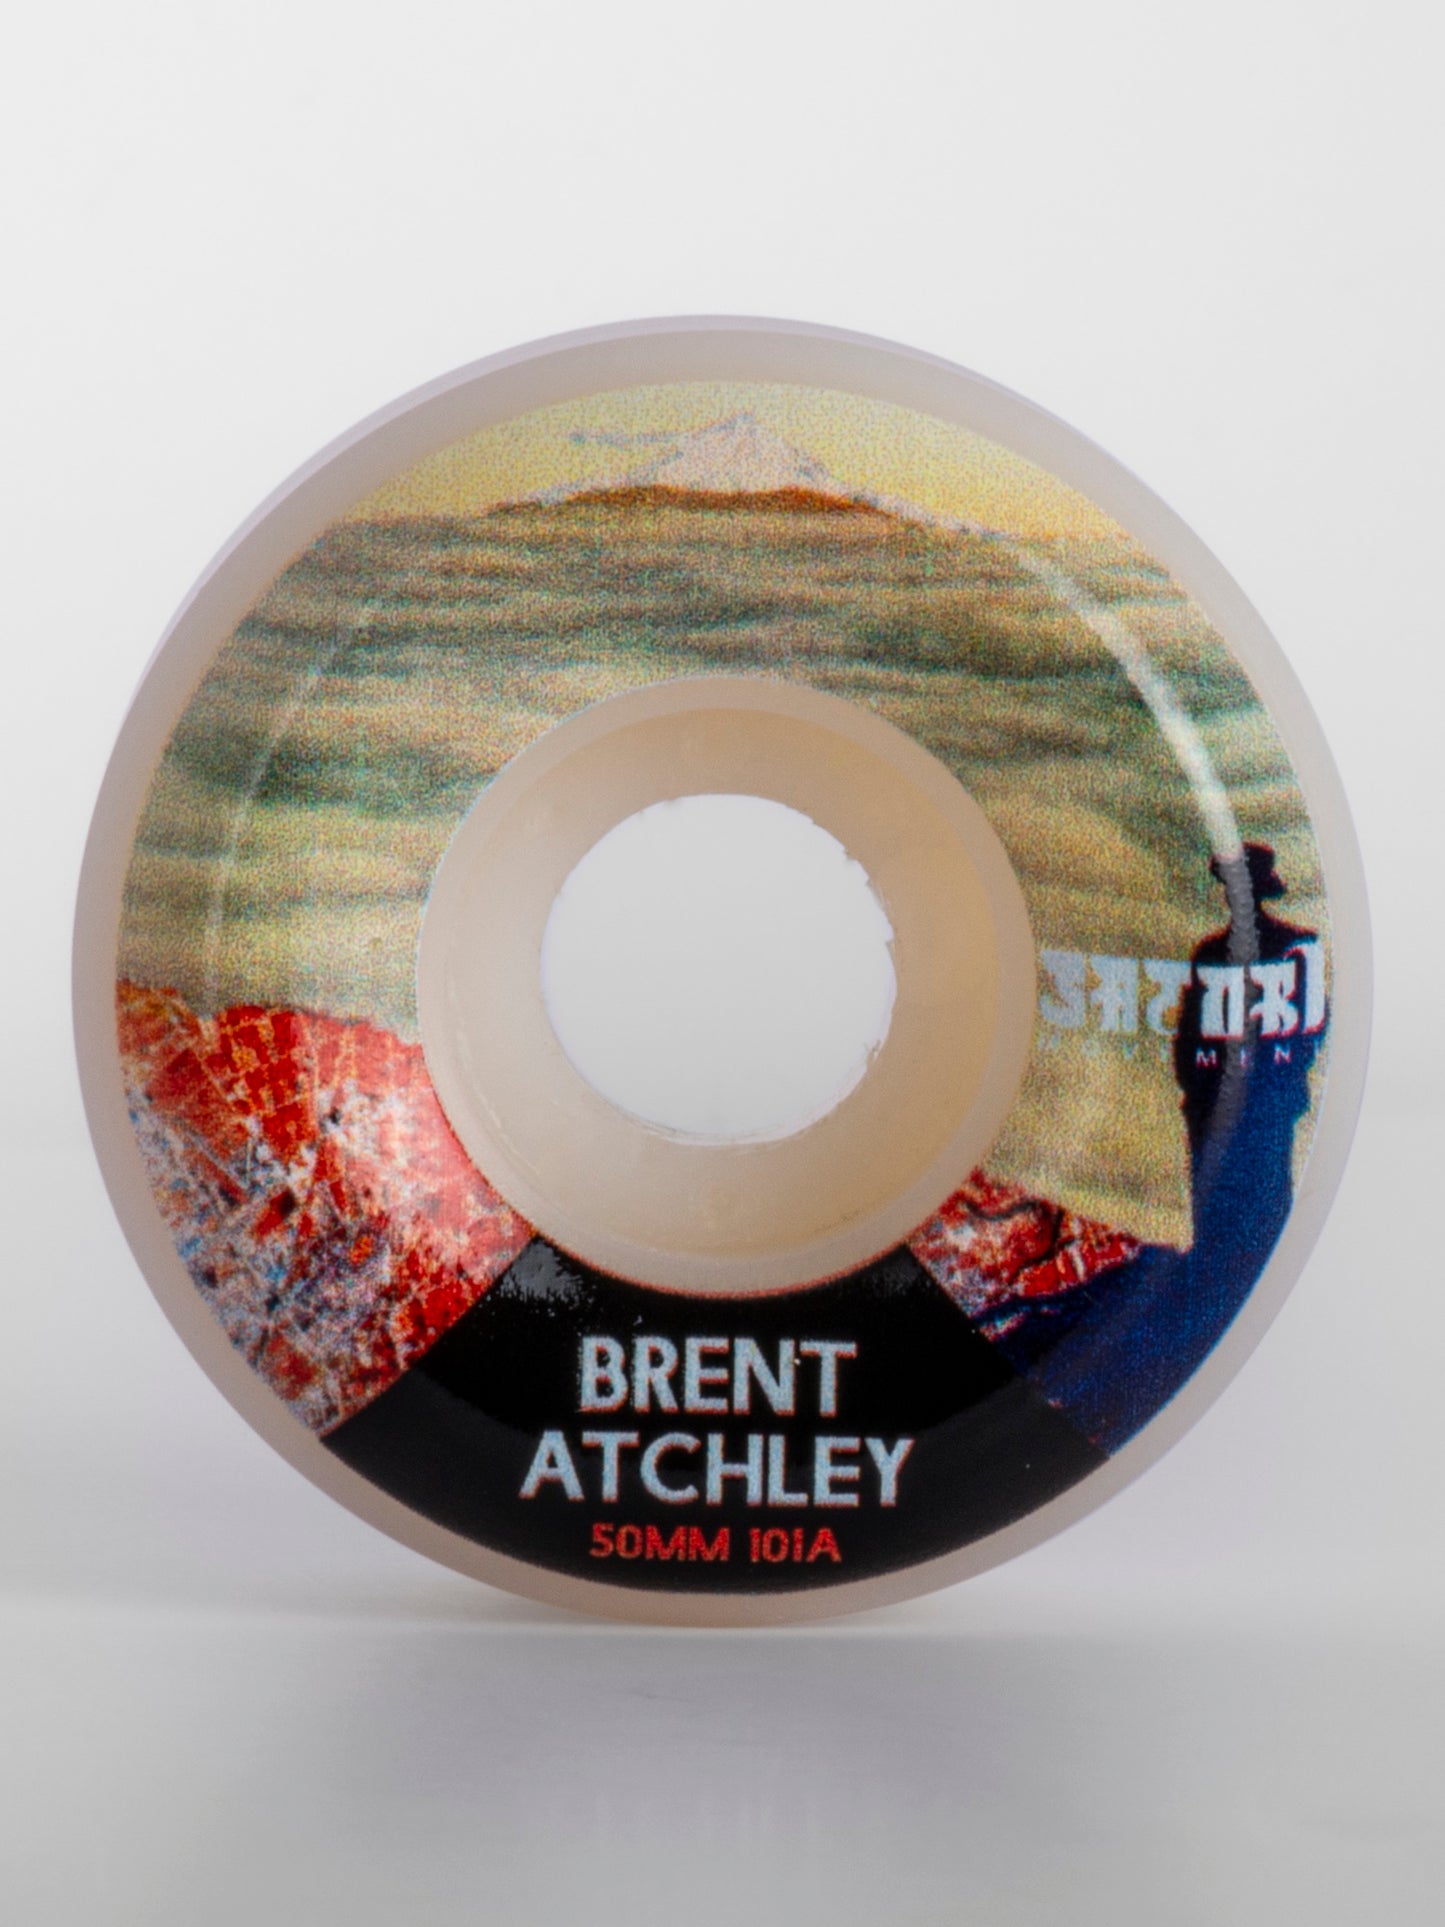 ล้อ SATORI Artist Series - Brent Atchley 50mm/101a